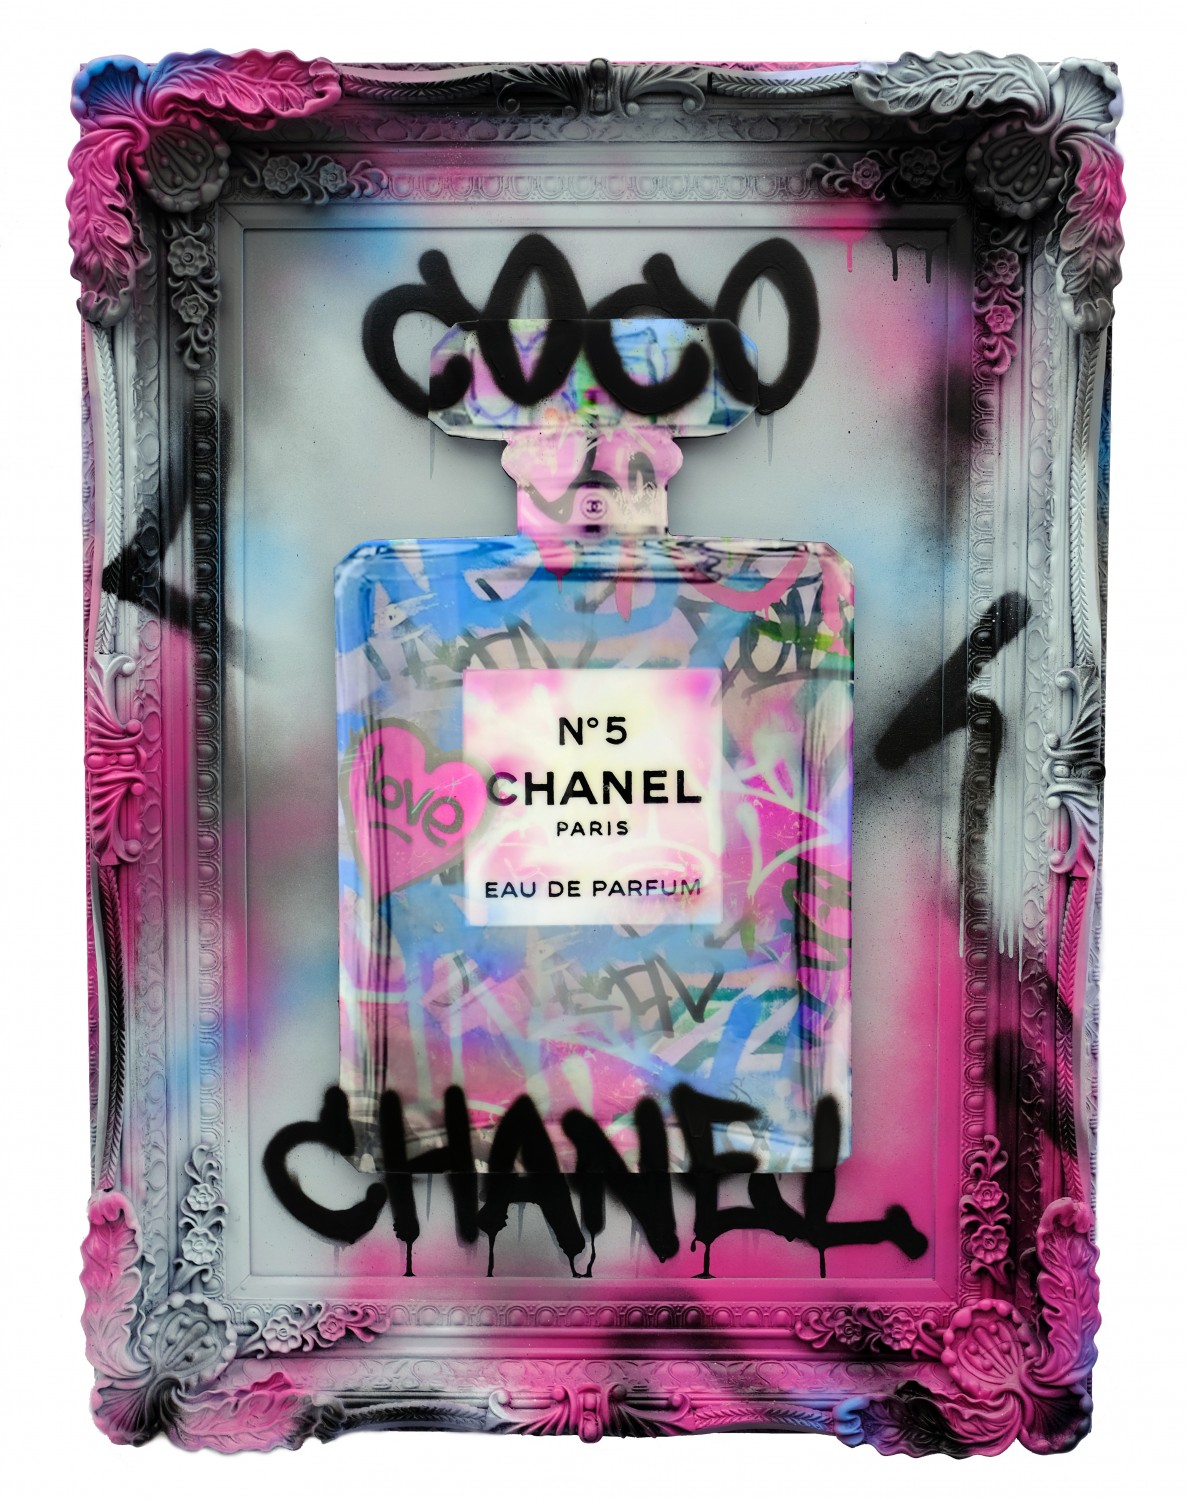 Chanel Purple Art 